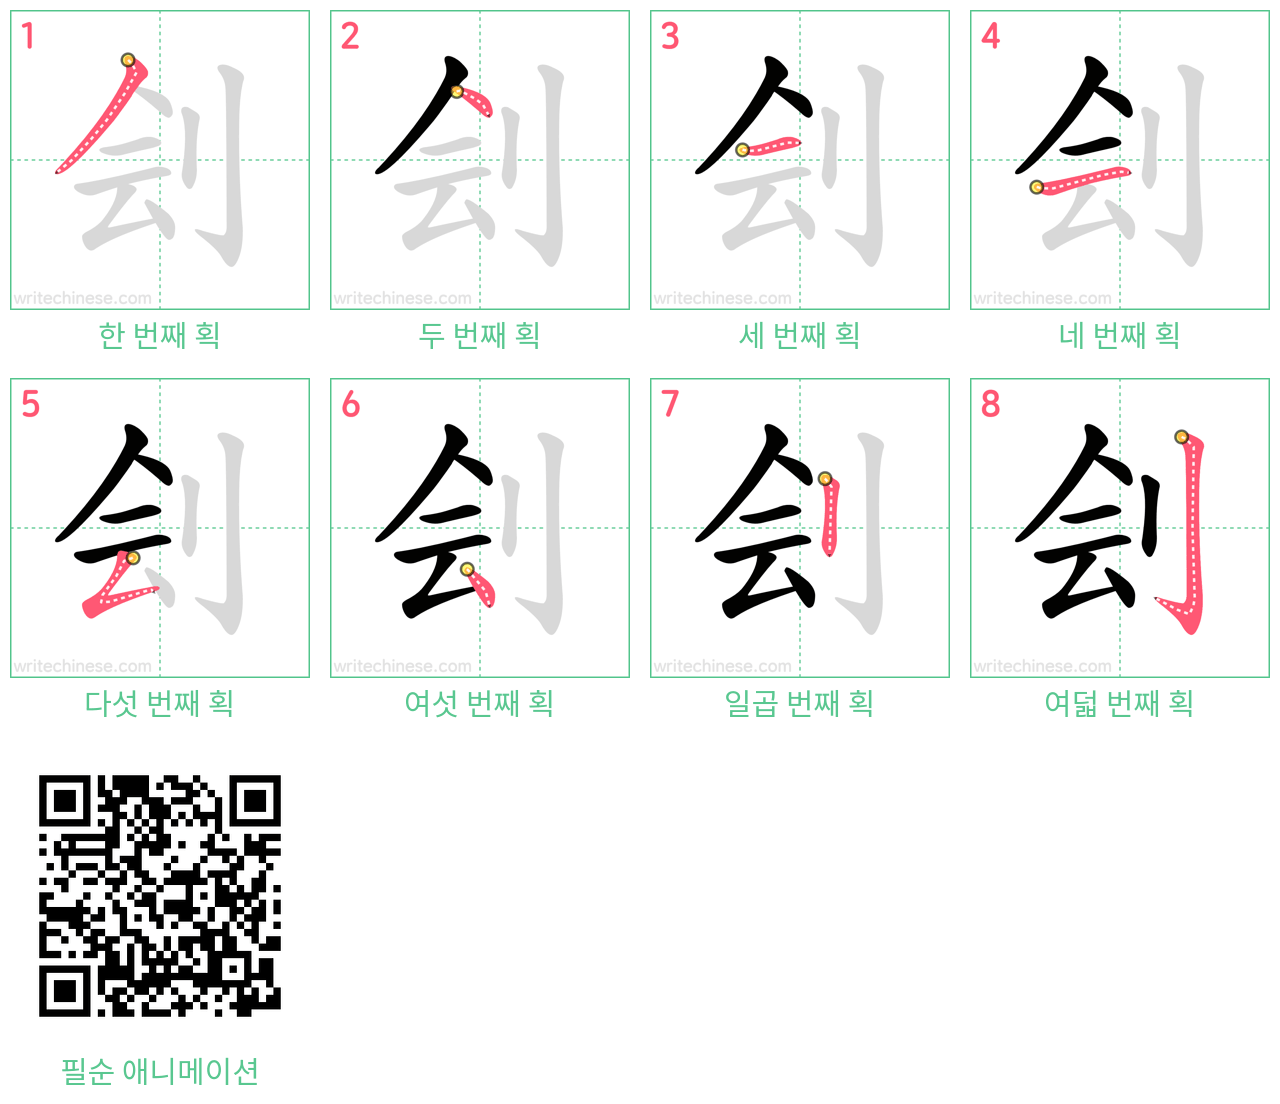 刽 step-by-step stroke order diagrams